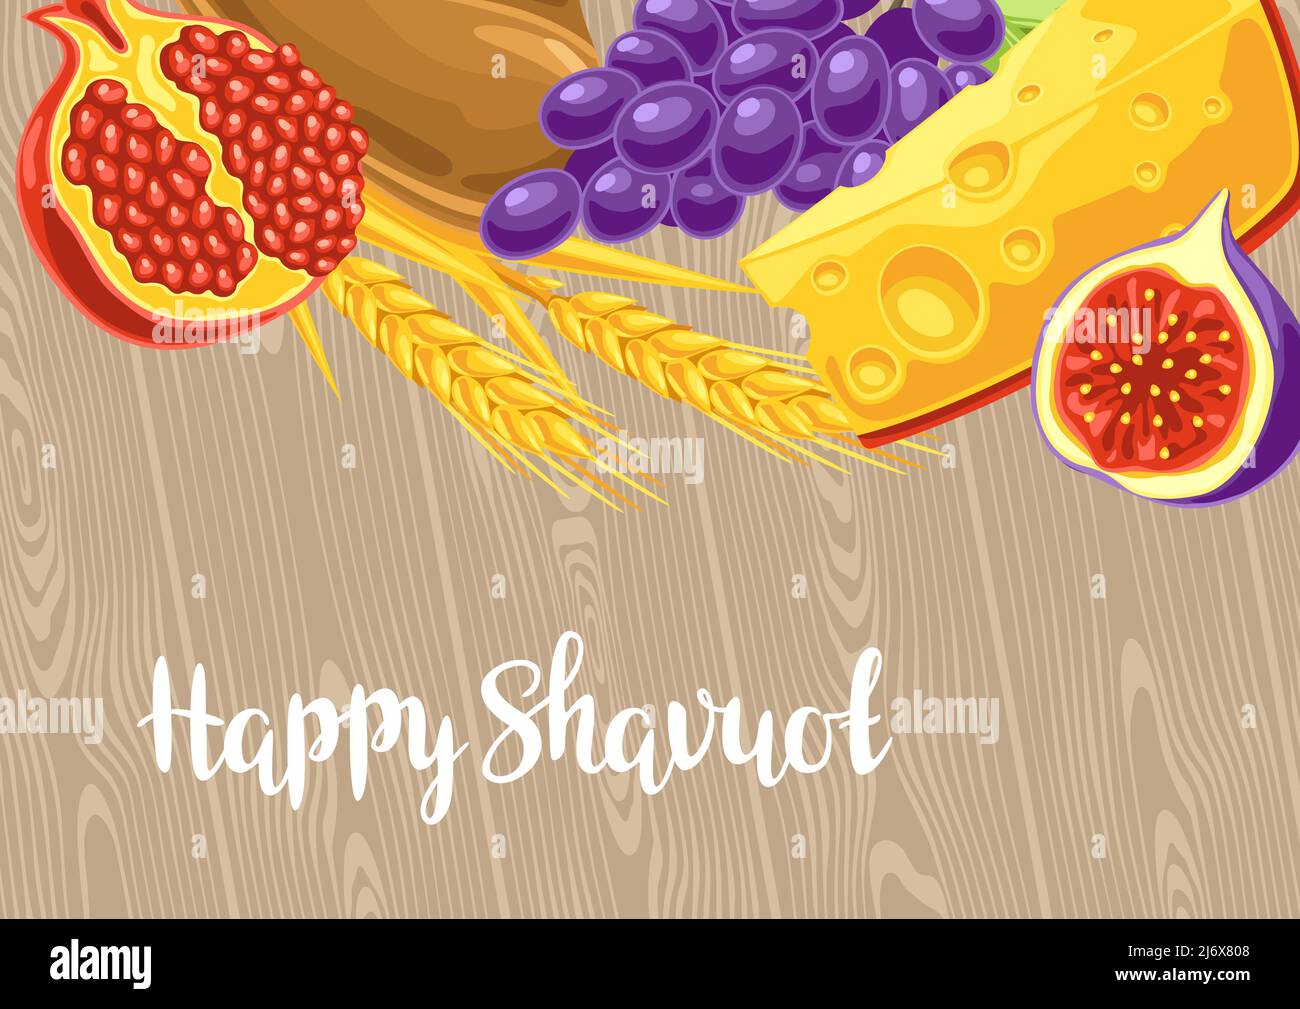 Buon biglietto d'auguri Shavuot. Sfondo delle vacanze con simboli tradizionali del festival ebraico. Illustrazione Vettoriale